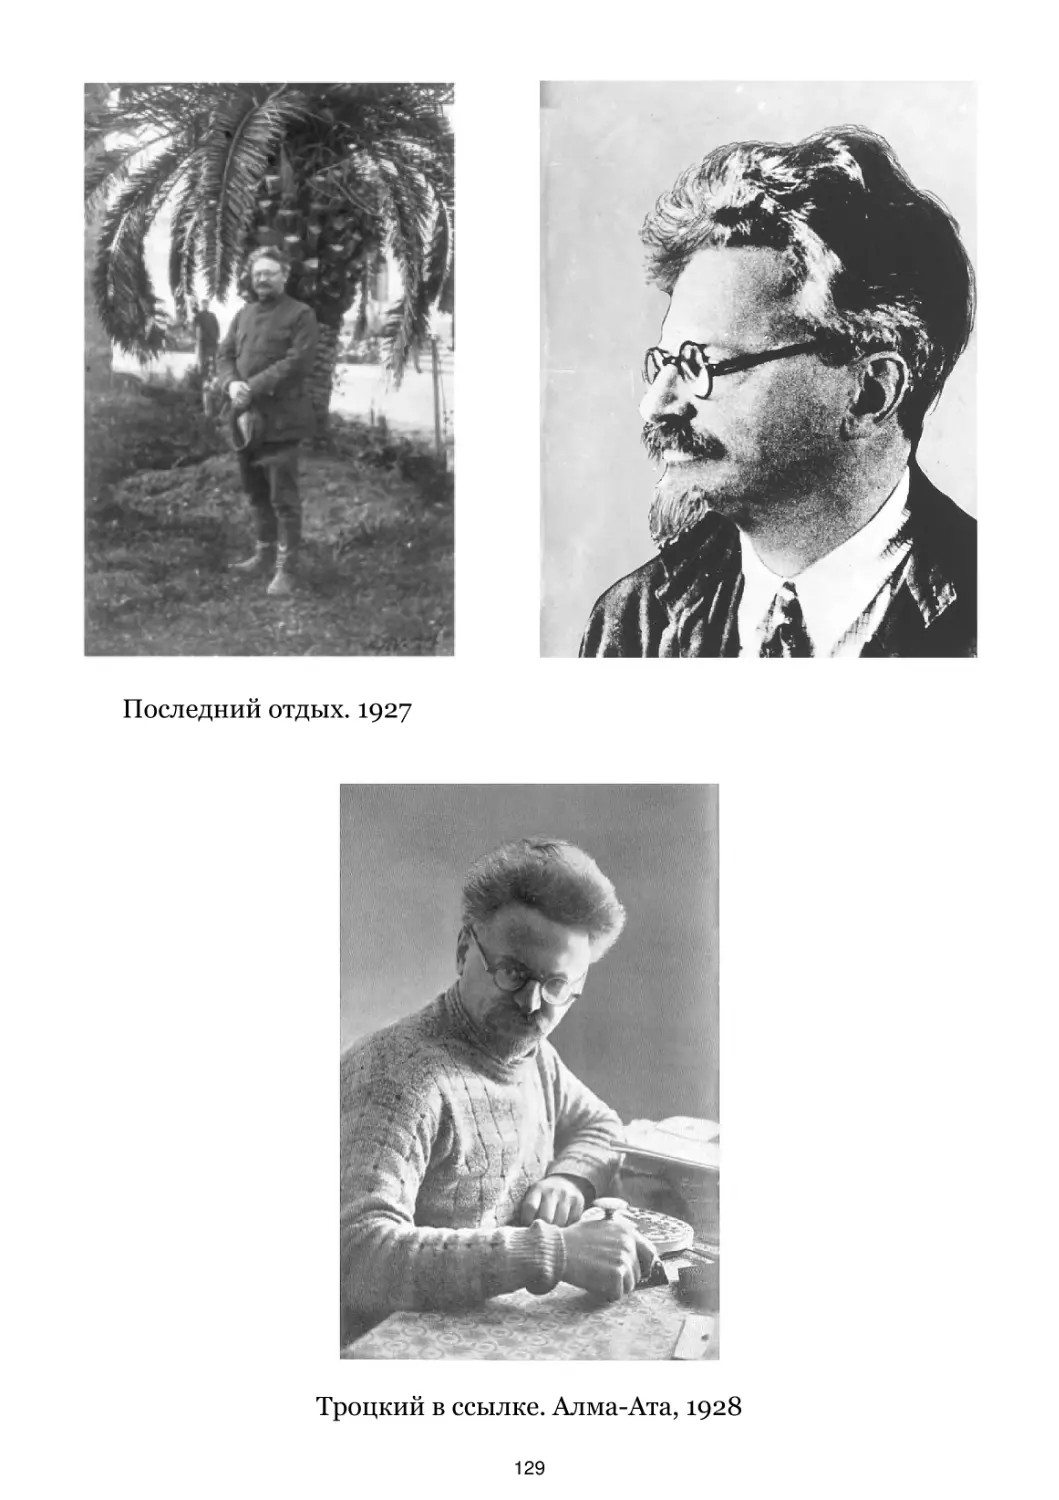 Последний отдых. 1927
Троцкий в ссылке. Алма-Ата, 1928